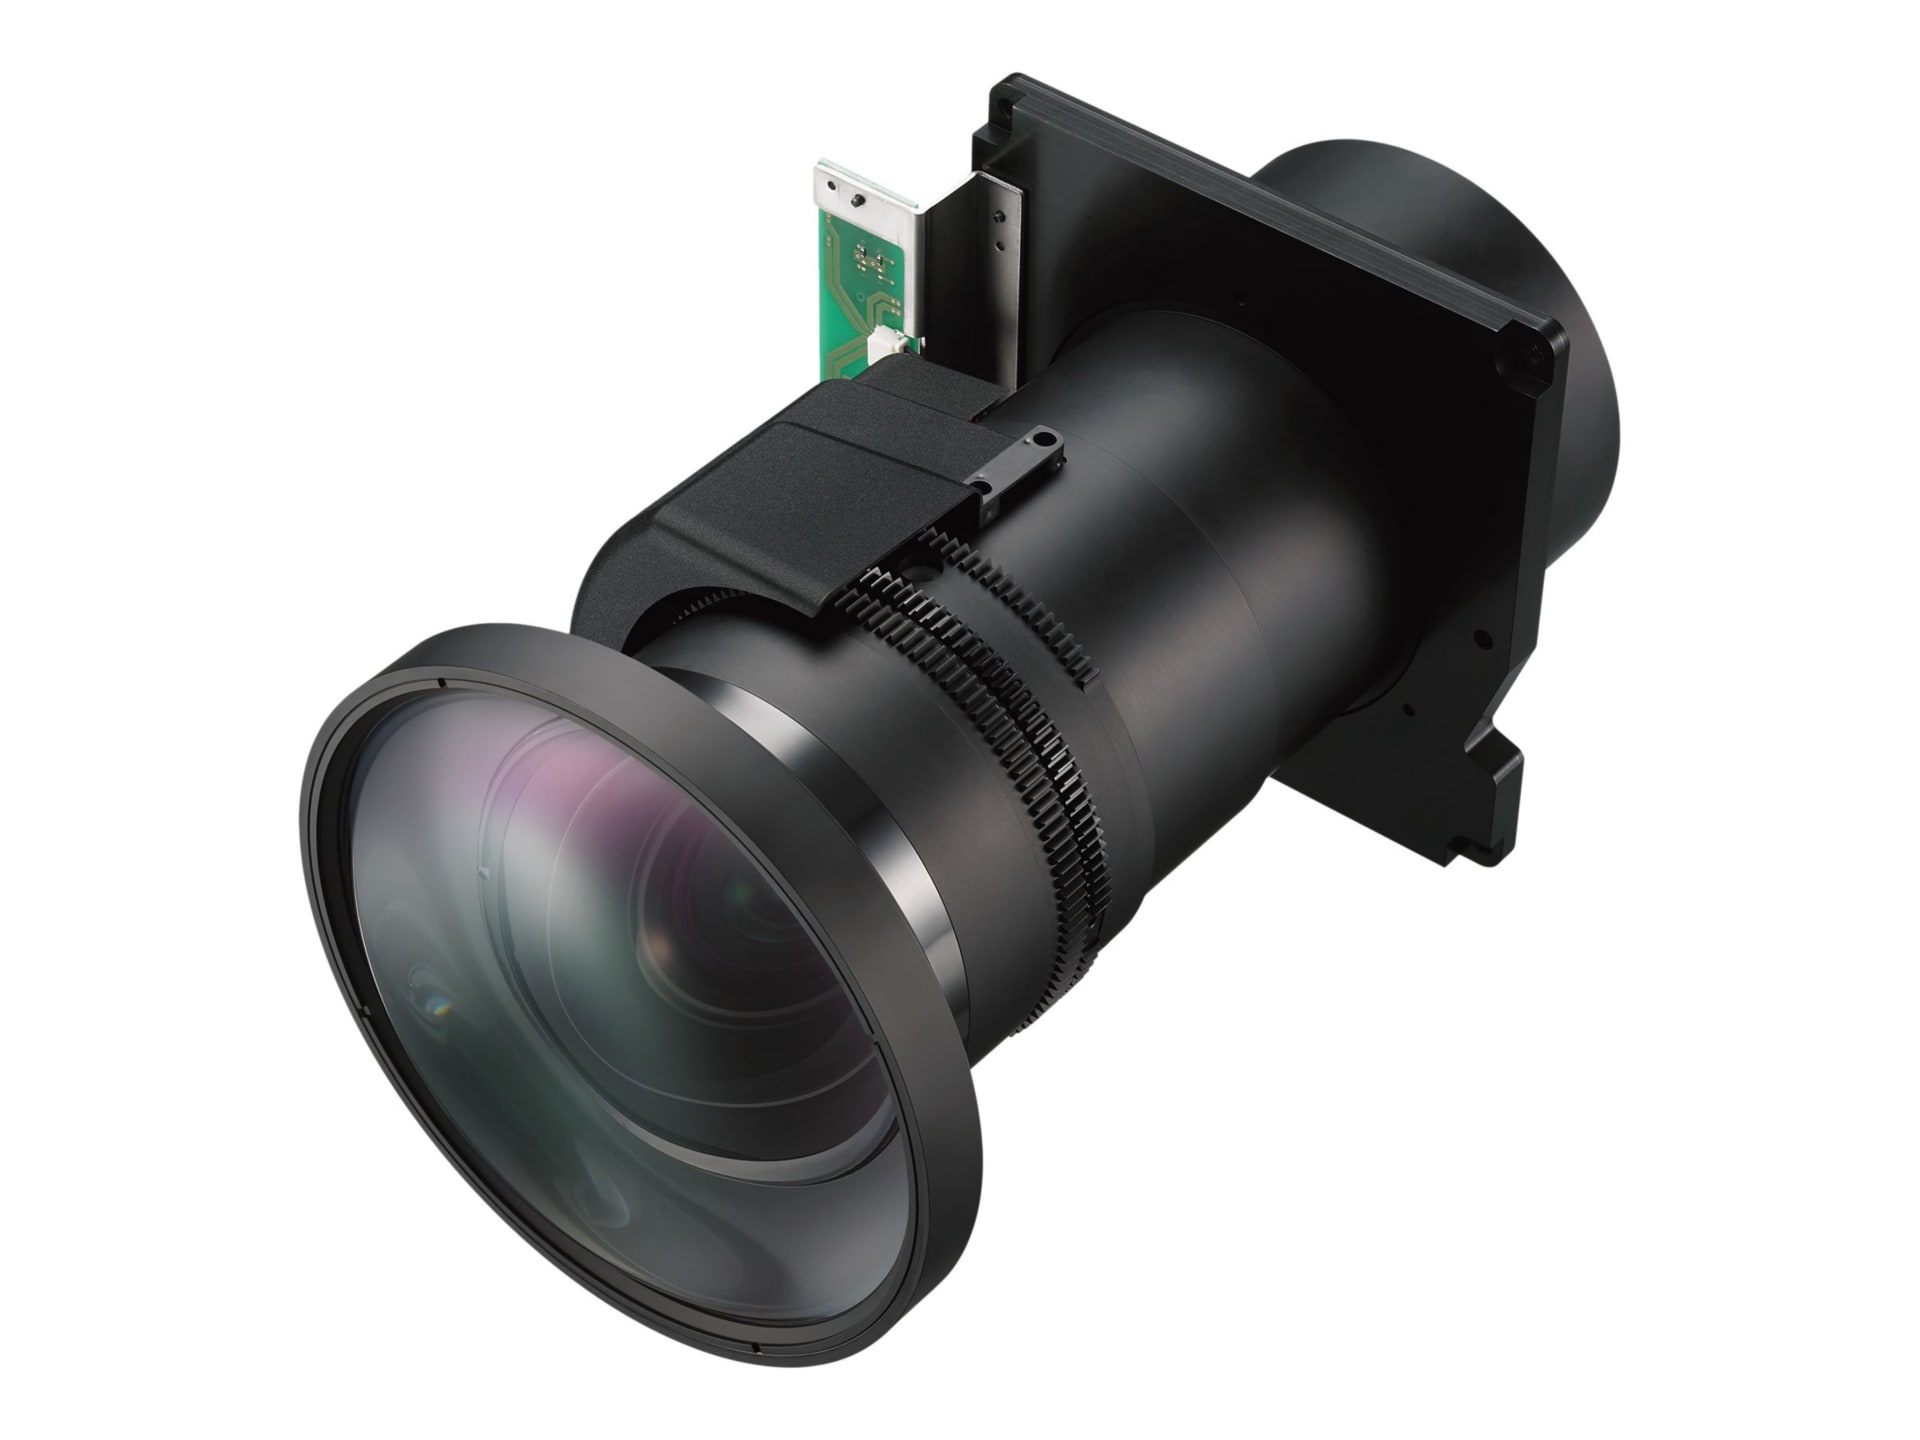 Sony VPLL-Z4107 - zoom lens